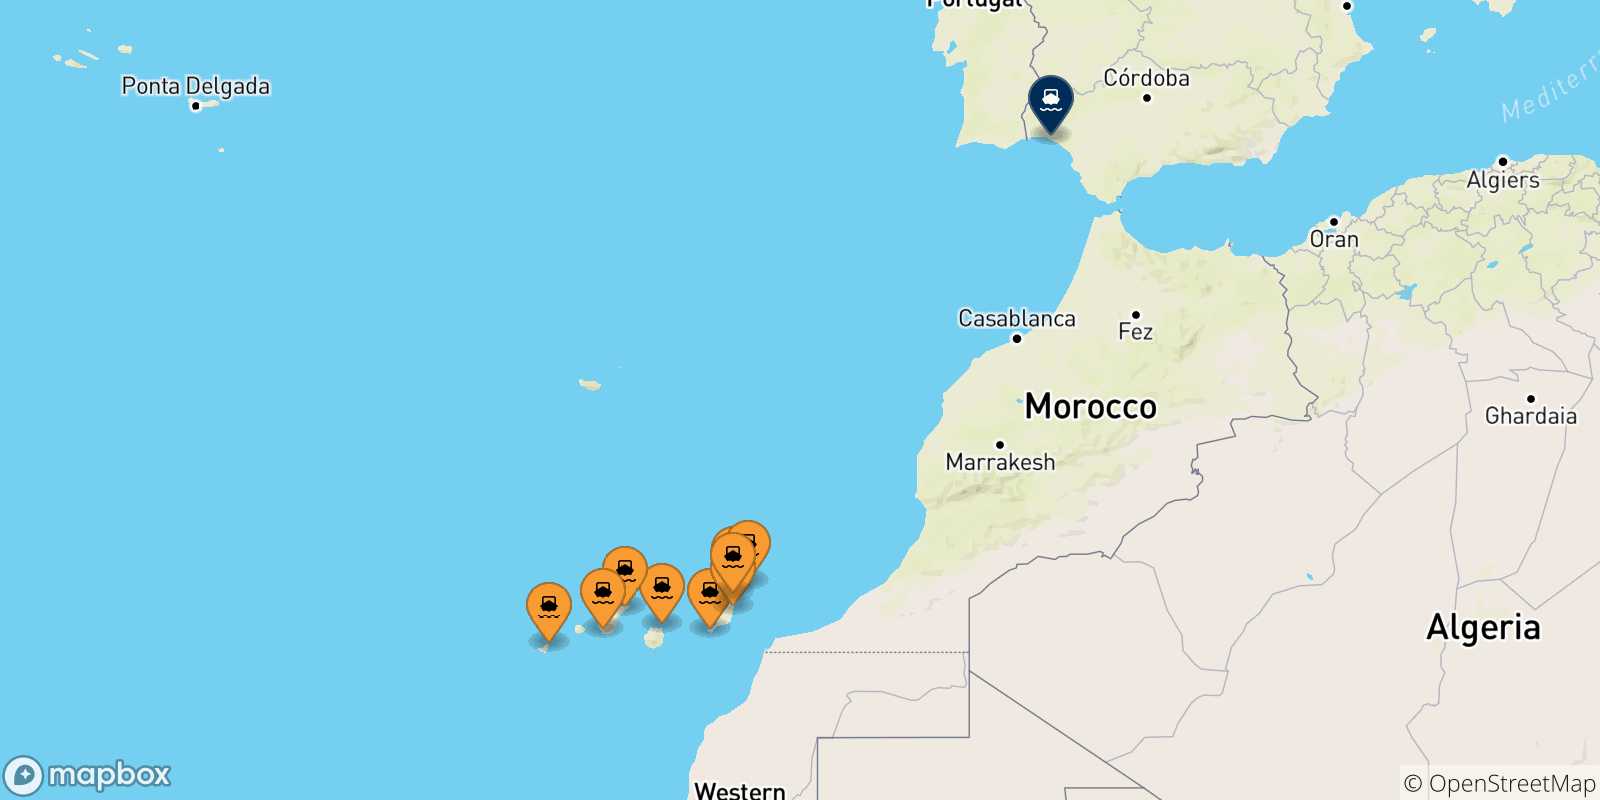 Mappa delle possibili rotte tra le Isole Canarie e la Spagna